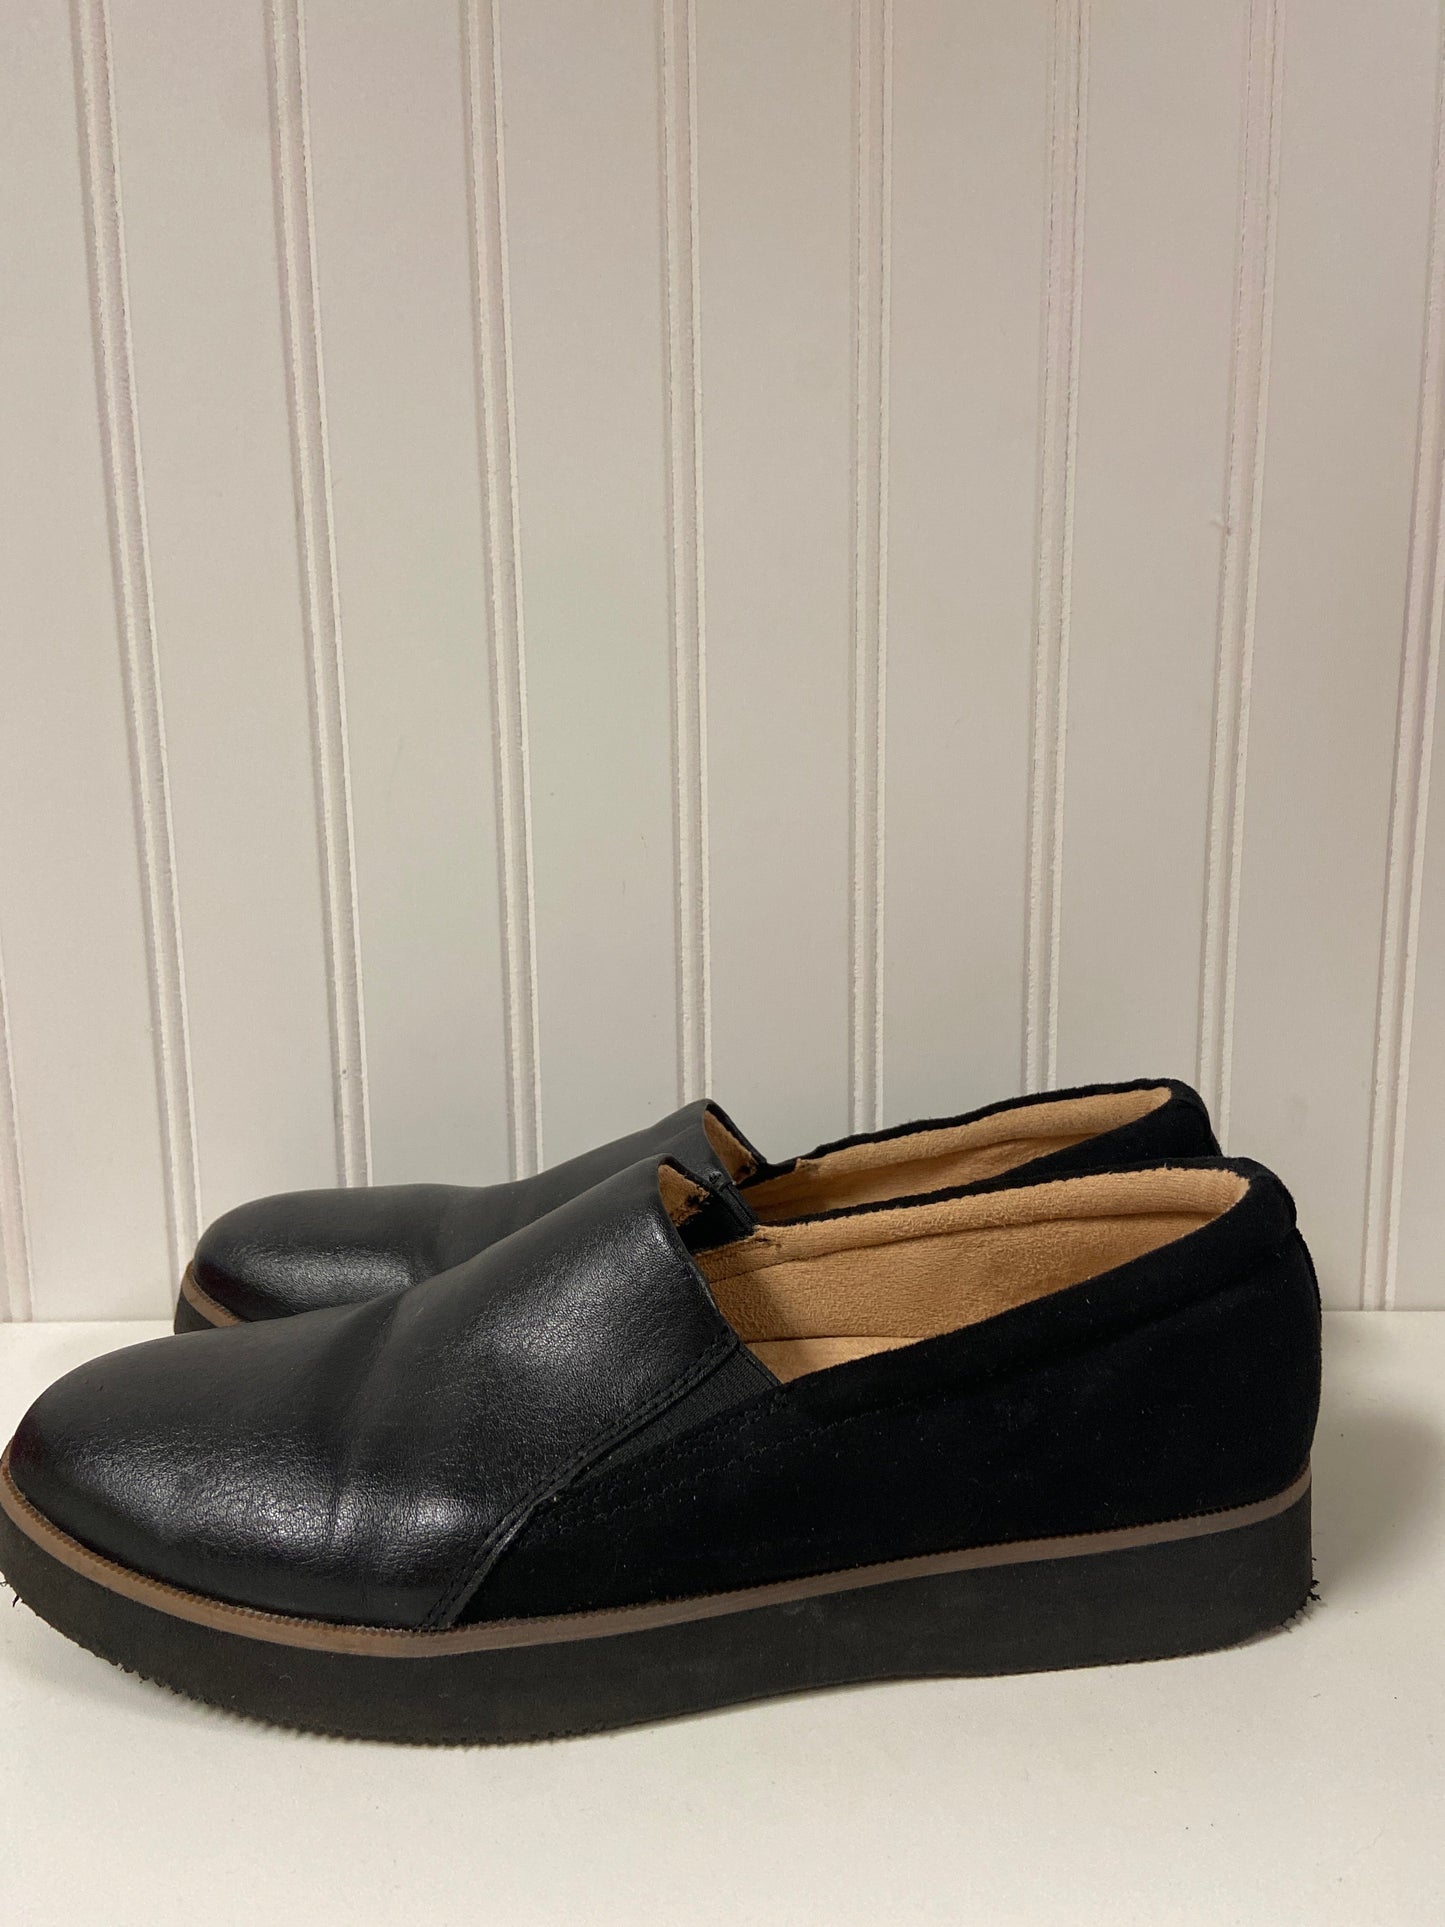 Black Shoes Flats Naturalizer, Size 8.5